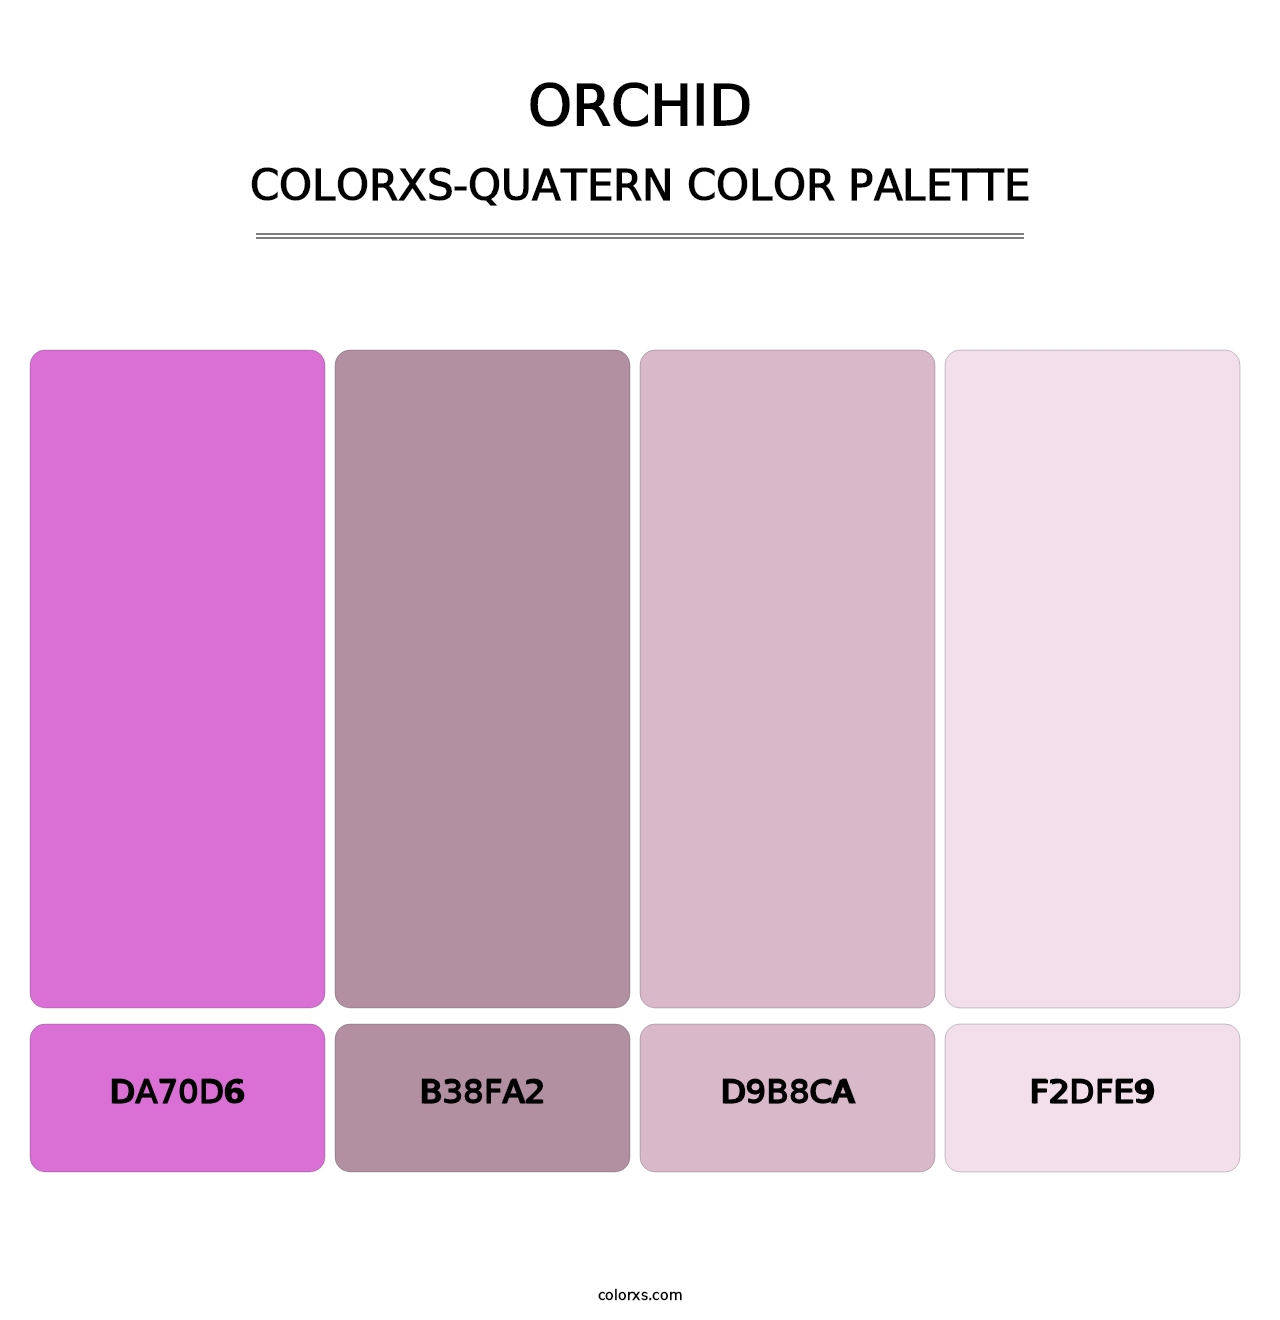 Orchid - Colorxs Quatern Palette